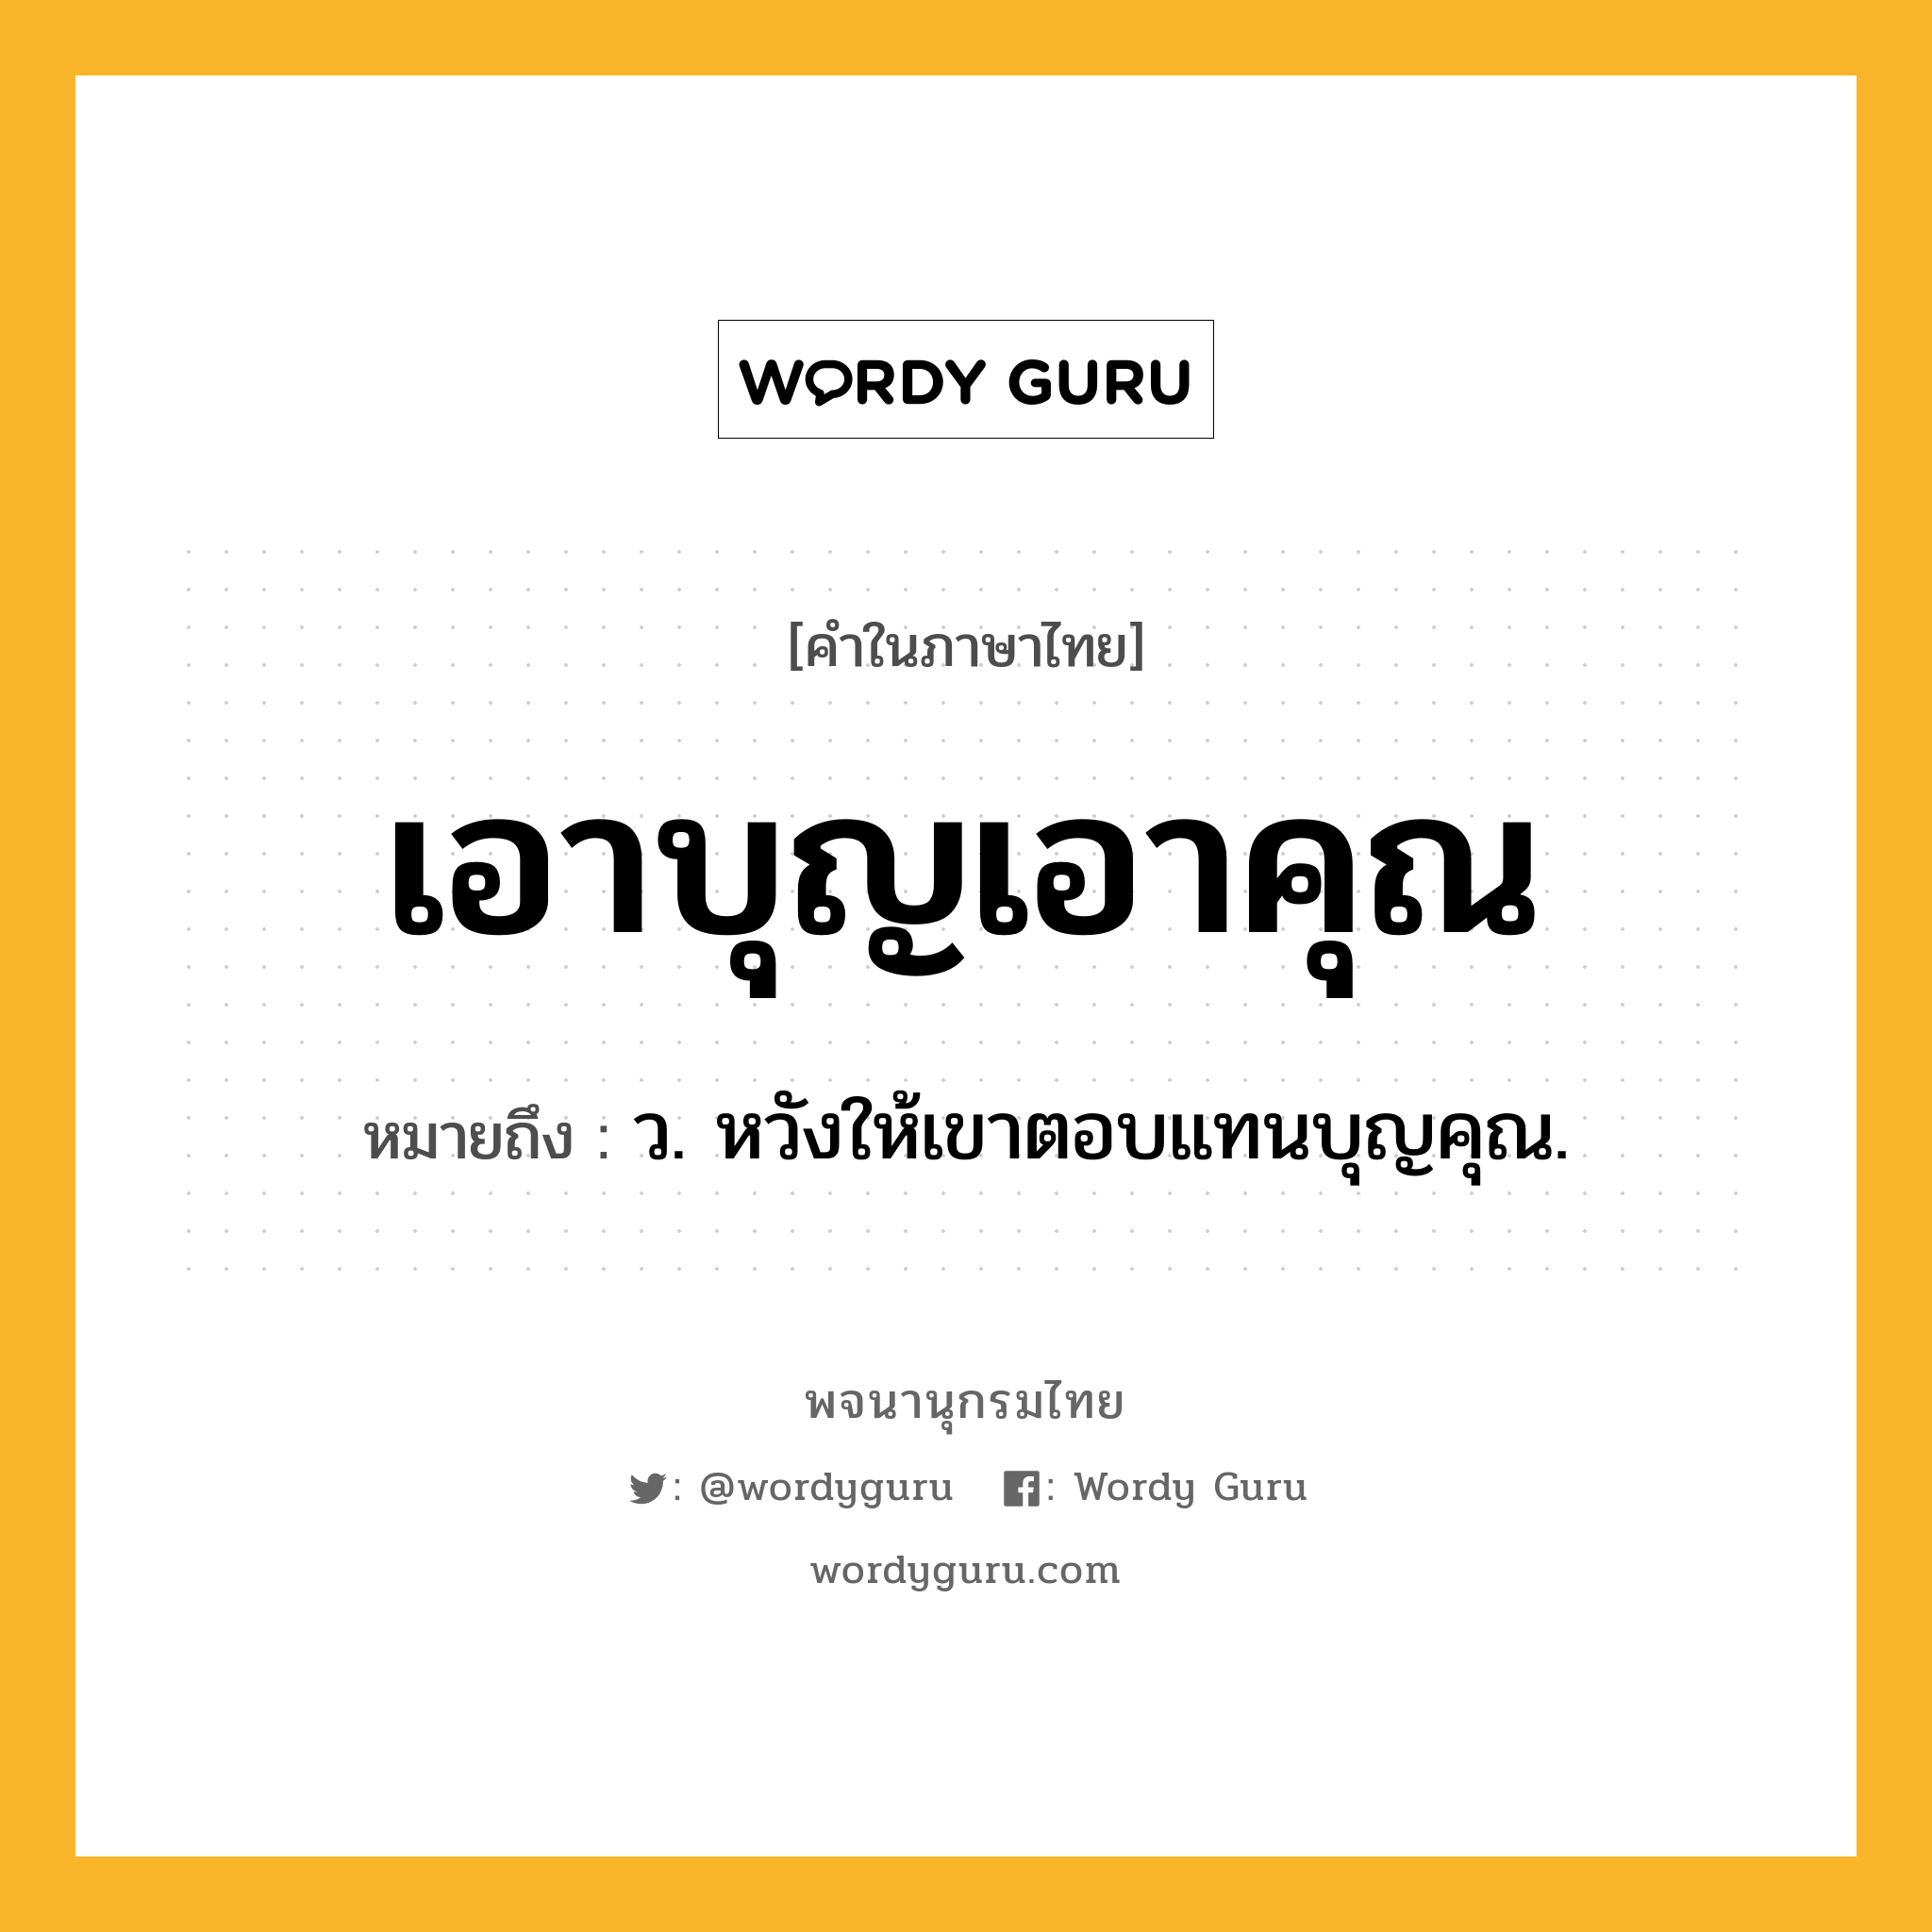 เอาบุญเอาคุณ หมายถึงอะไร?, คำในภาษาไทย เอาบุญเอาคุณ หมายถึง ว. หวังให้เขาตอบแทนบุญคุณ.